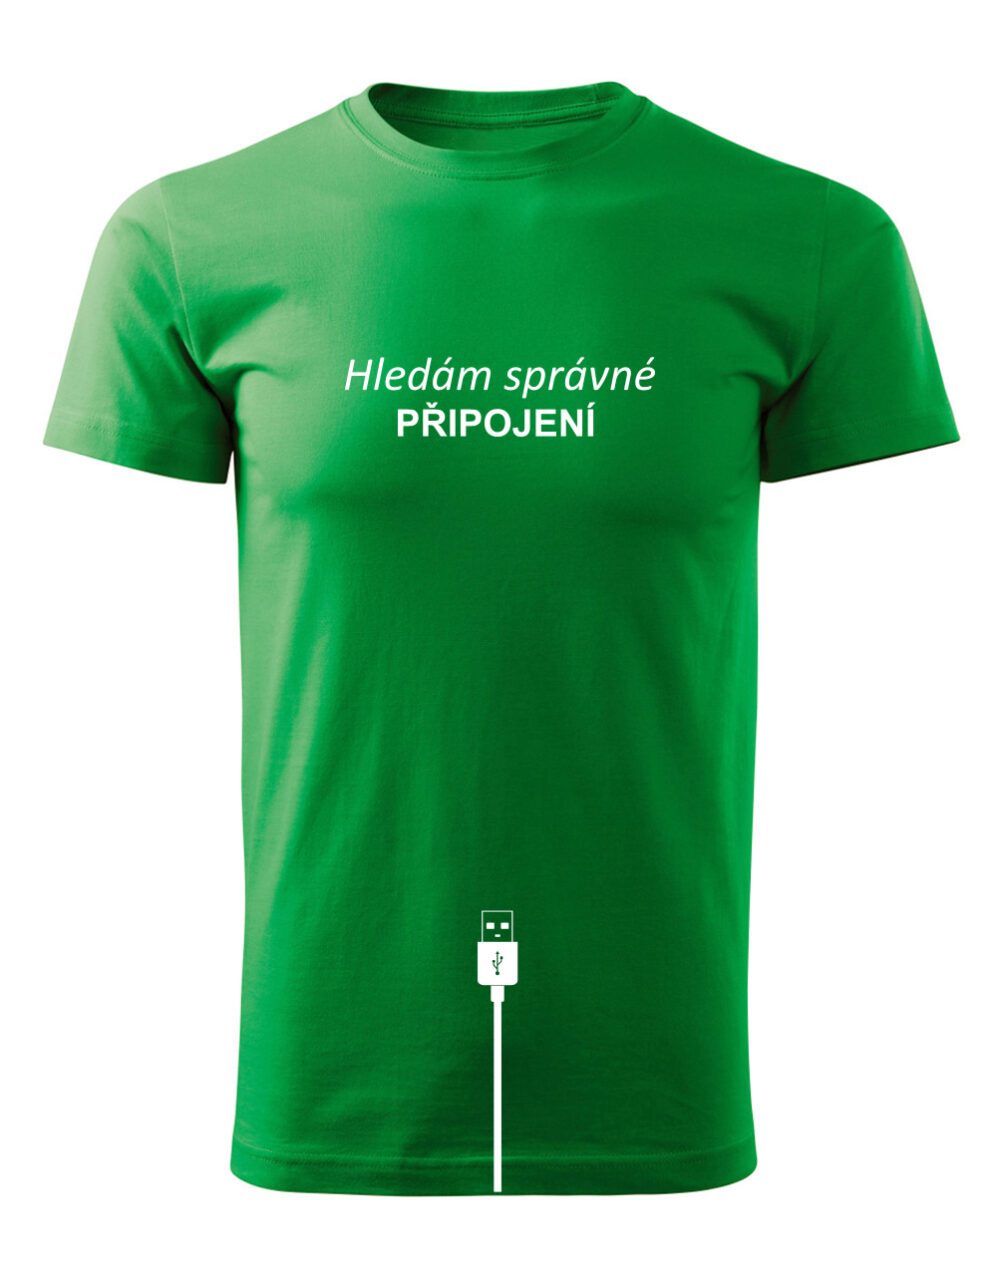 Pánské tričko s potiskem Hledám správné připojení světle zelená